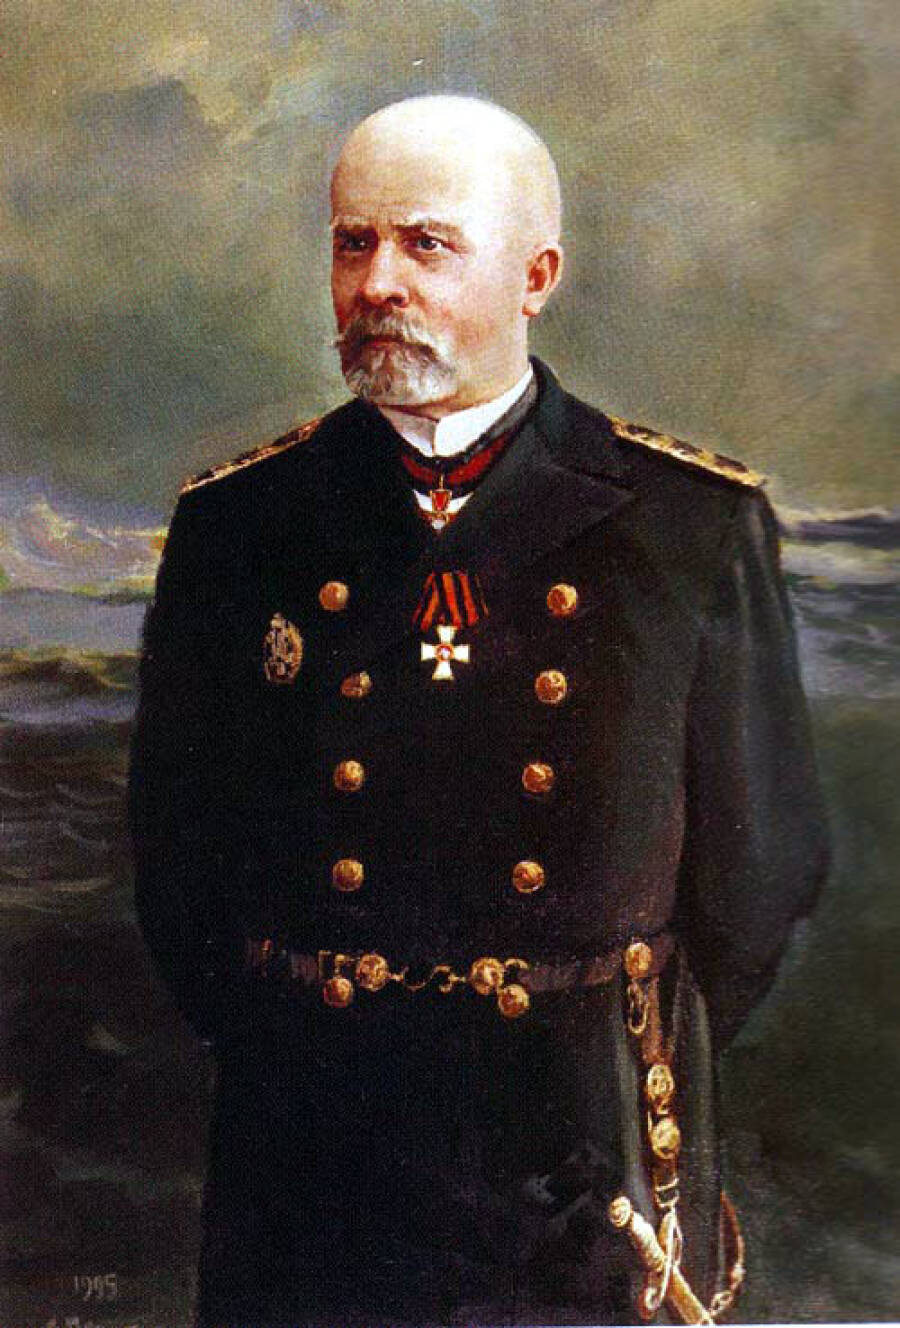 Николай Оттович фон Эссен (11 декабря 1860, Санкт-Петербург — 7 (20) мая 1915, Ревель) — русский адмирал (14 апреля 1913), командующий русским флотом Балтийского моря